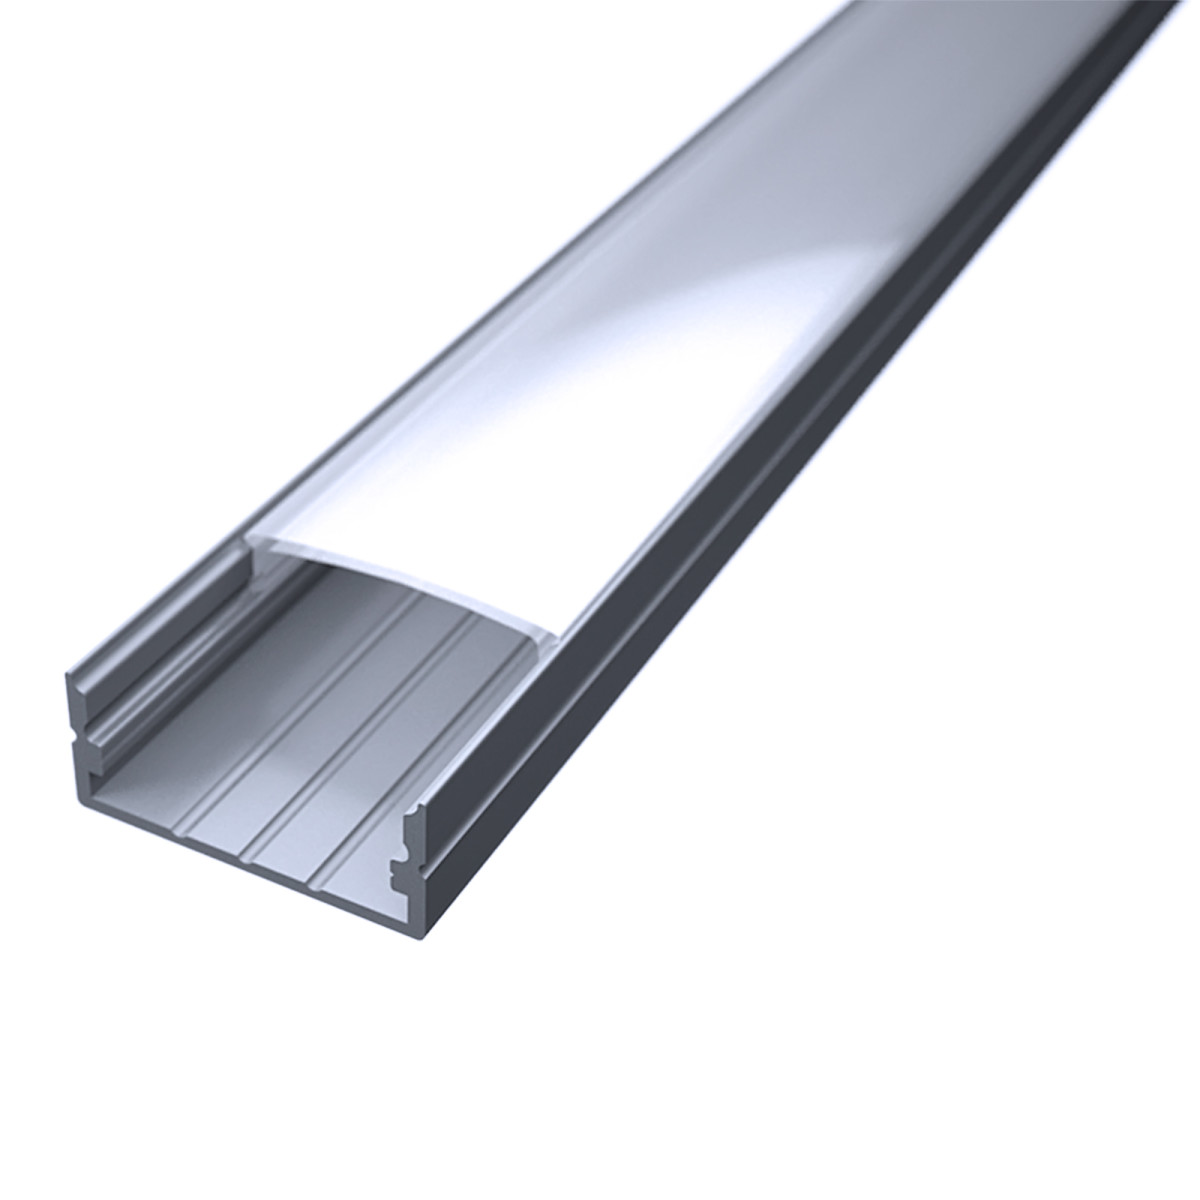 LED Flachprofil "Slim-Line max" | Abdeckung diffus | Zuschnitt auf 144cm |